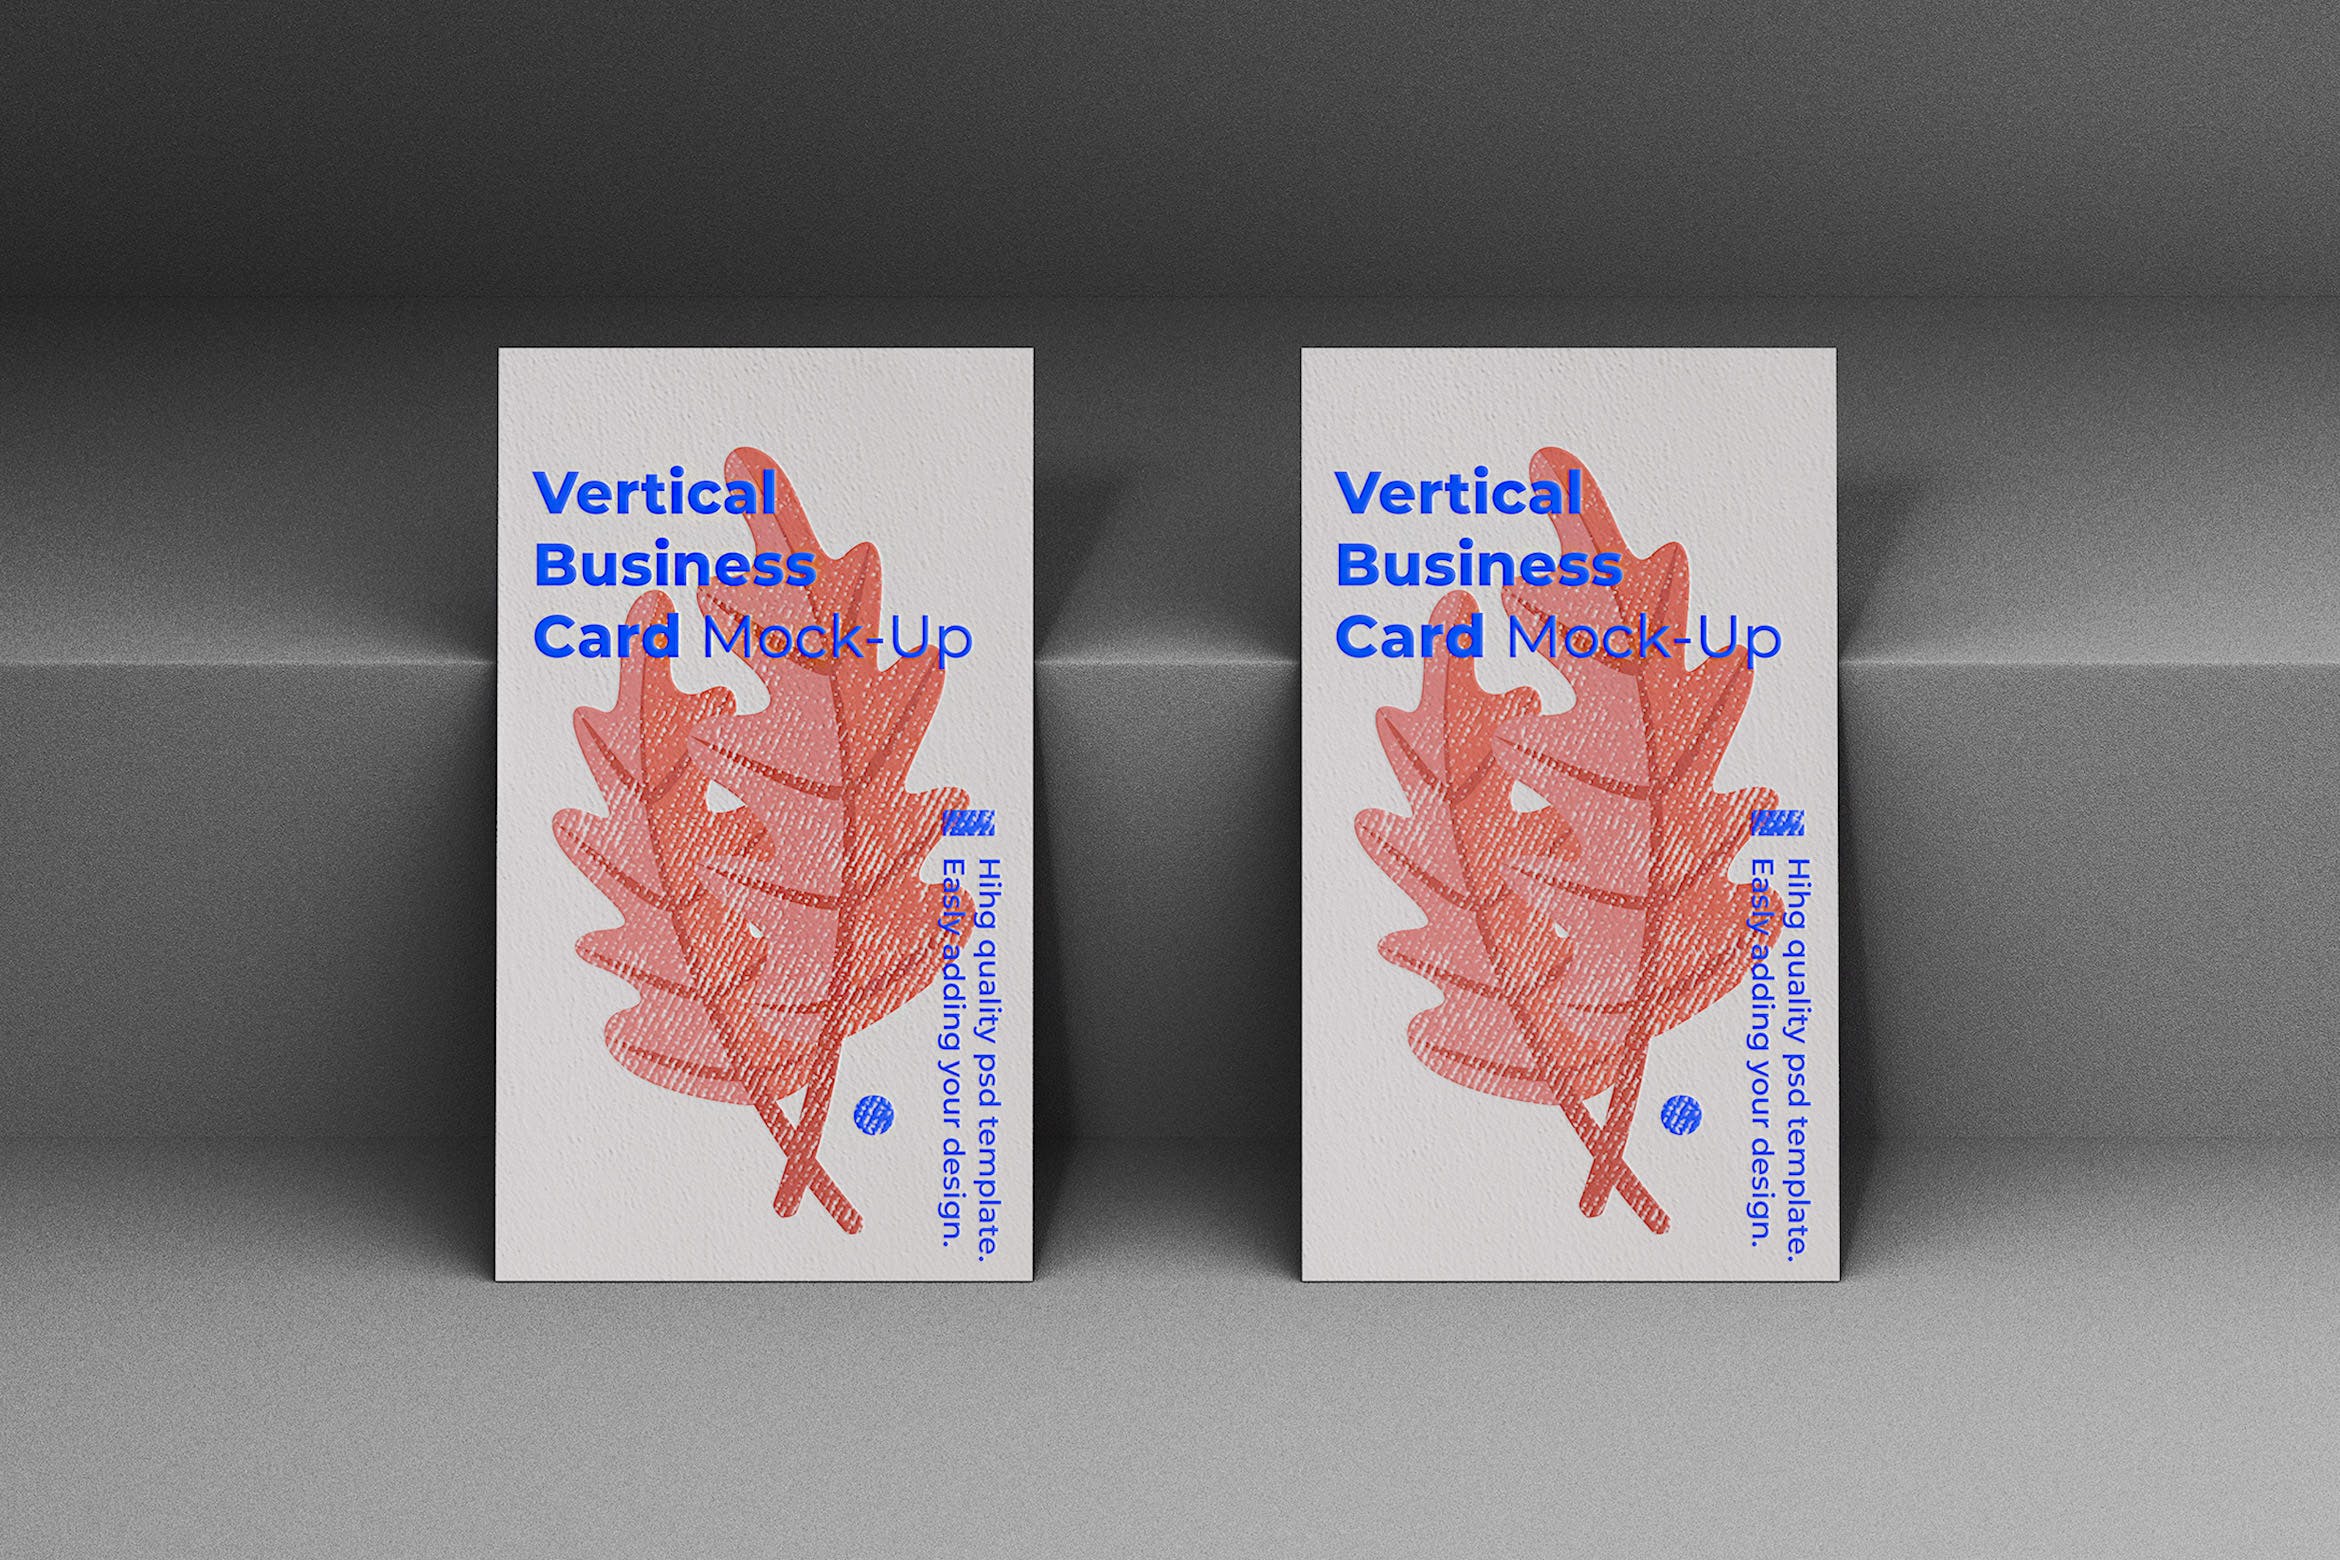 竖版企业名片设计立面效果图蚂蚁素材精选模板 Vertical Business Card Mock-Up Template插图